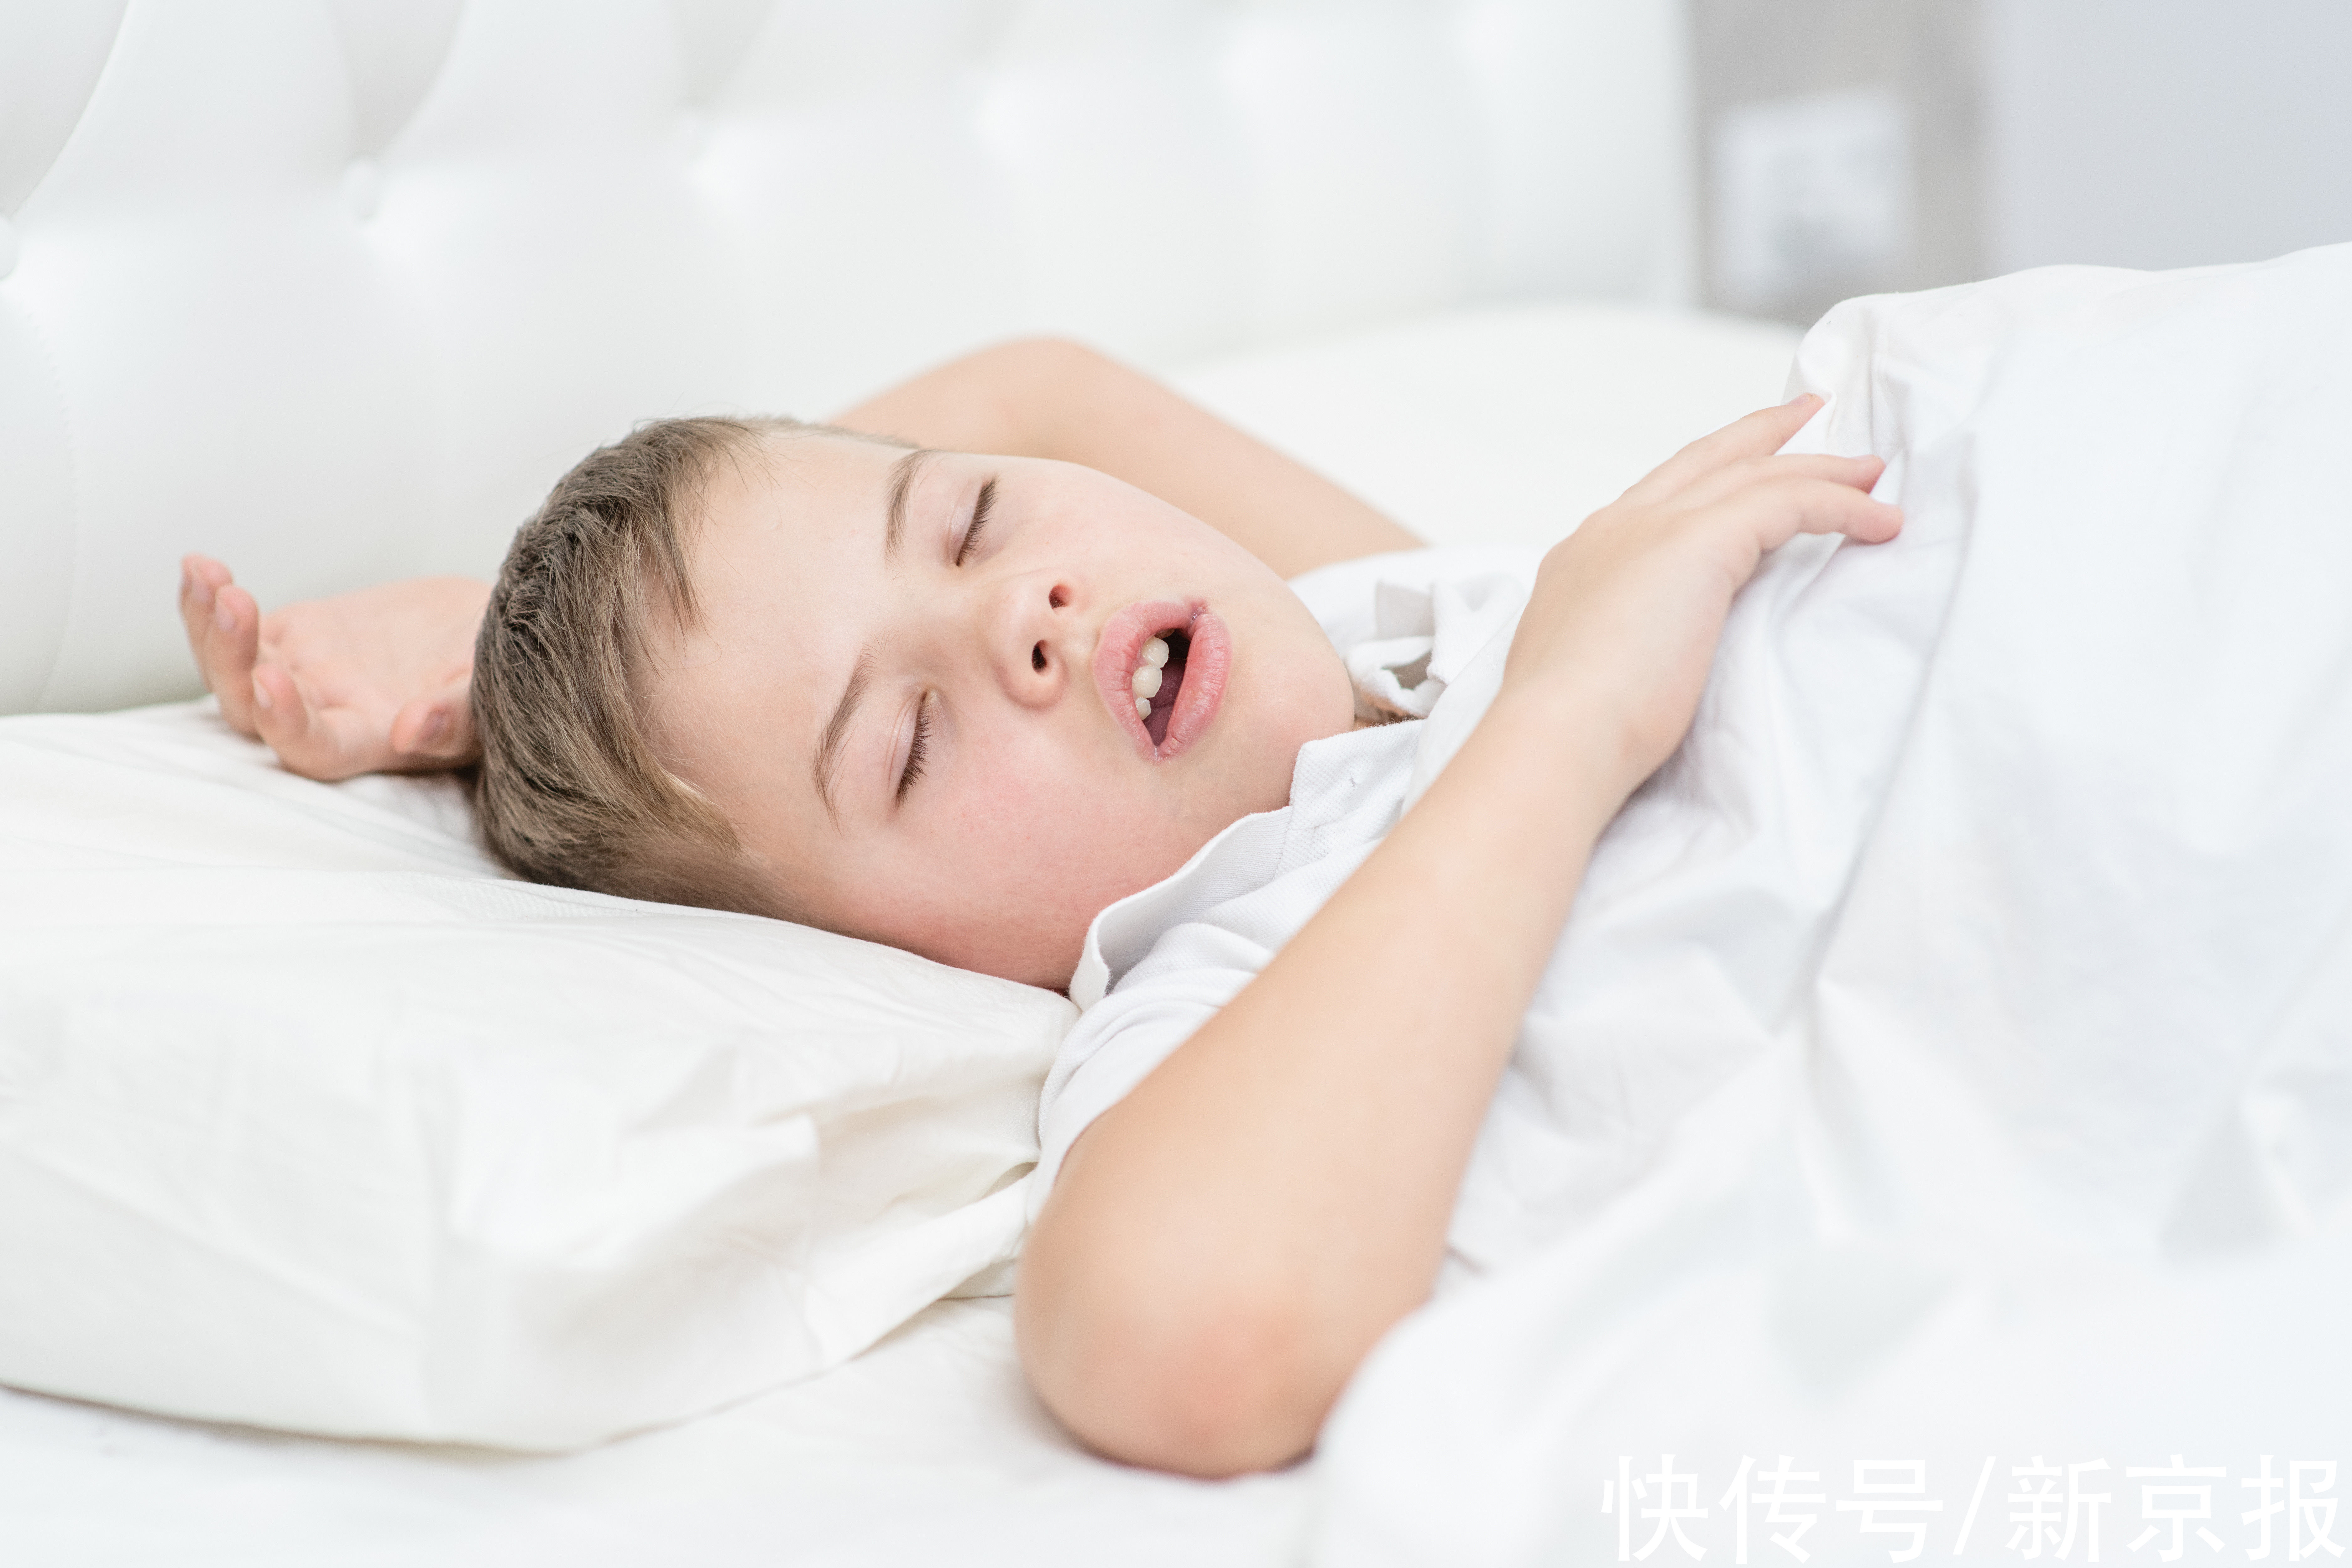 睡眠质量|腺样体肥大会变丑 孩子张口呼吸、嘴唇上翘 趁寒假去医院看看